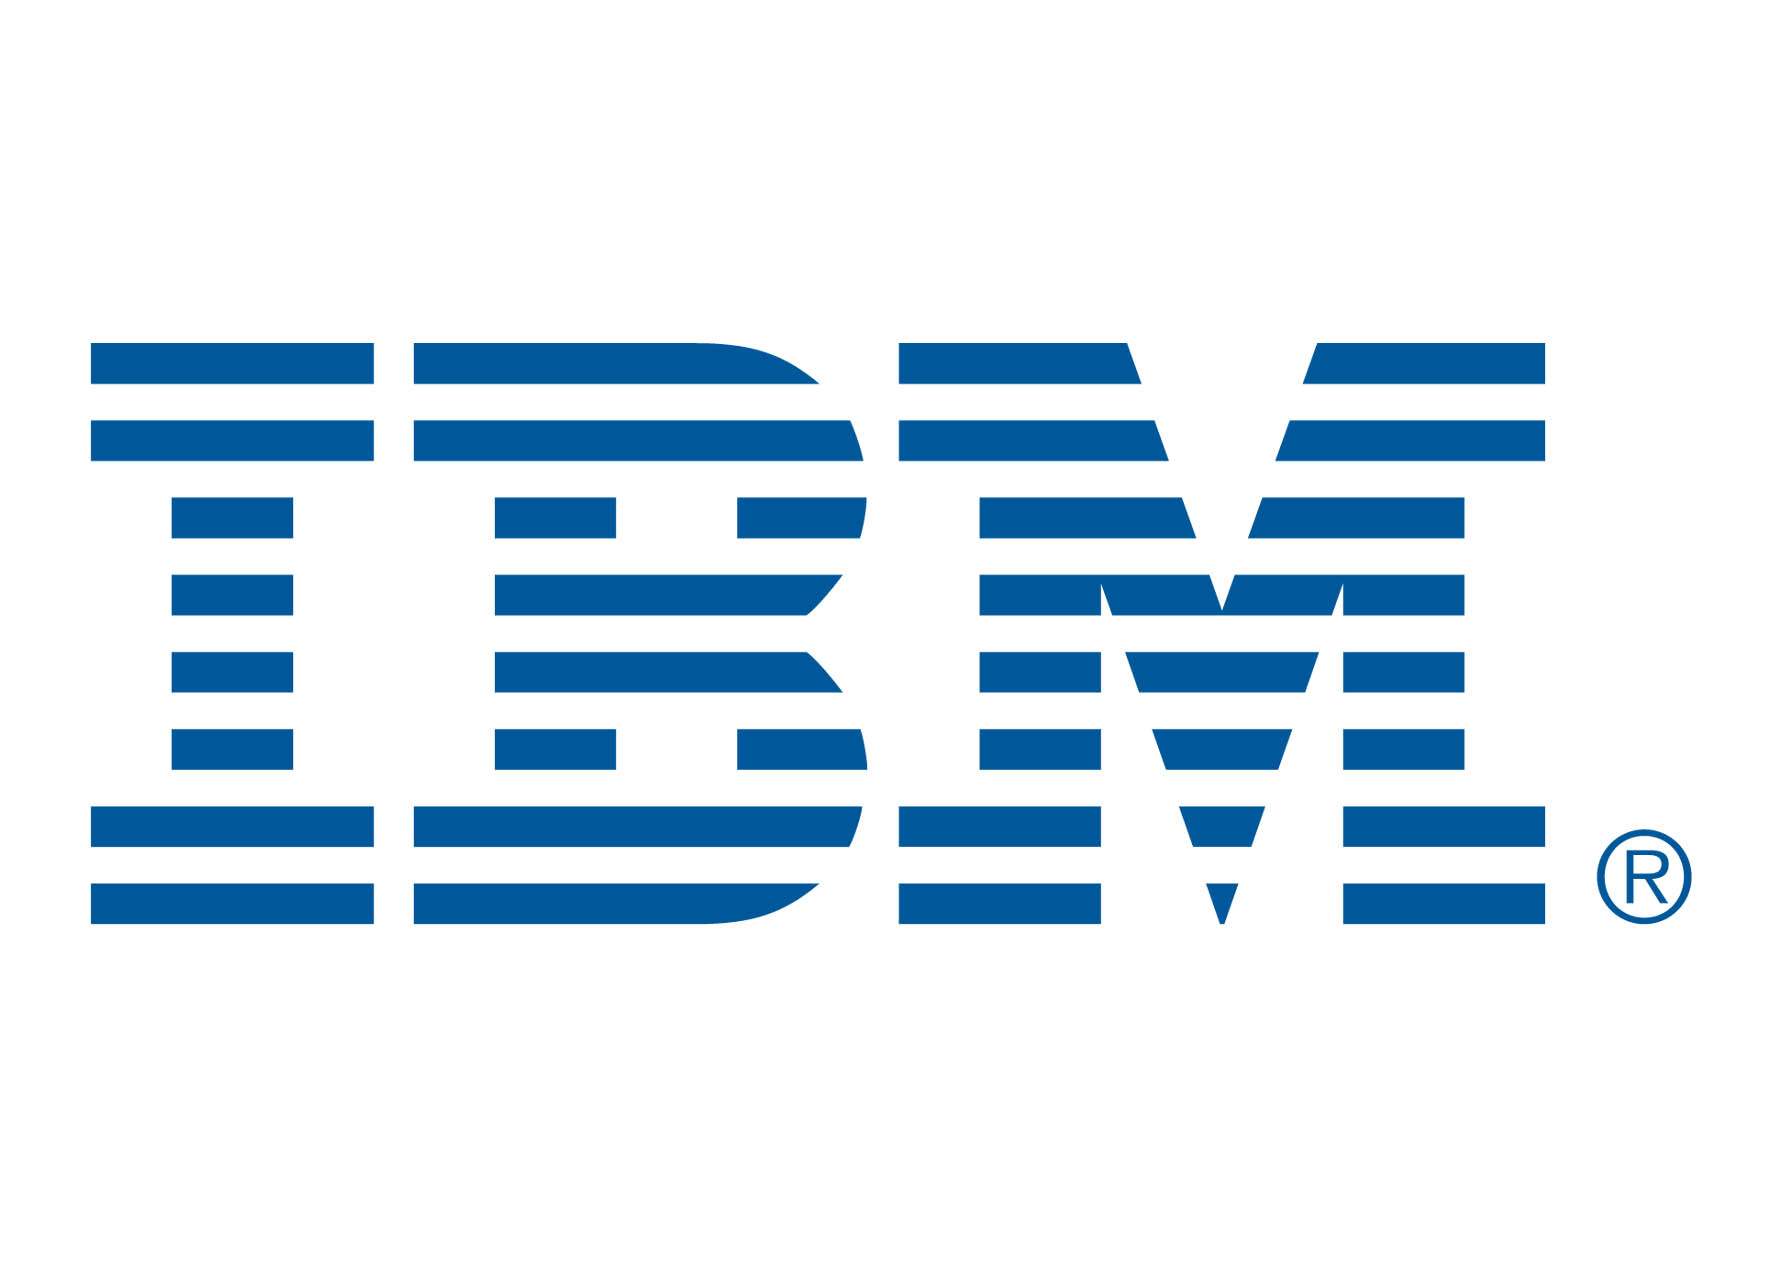 IBM logo in